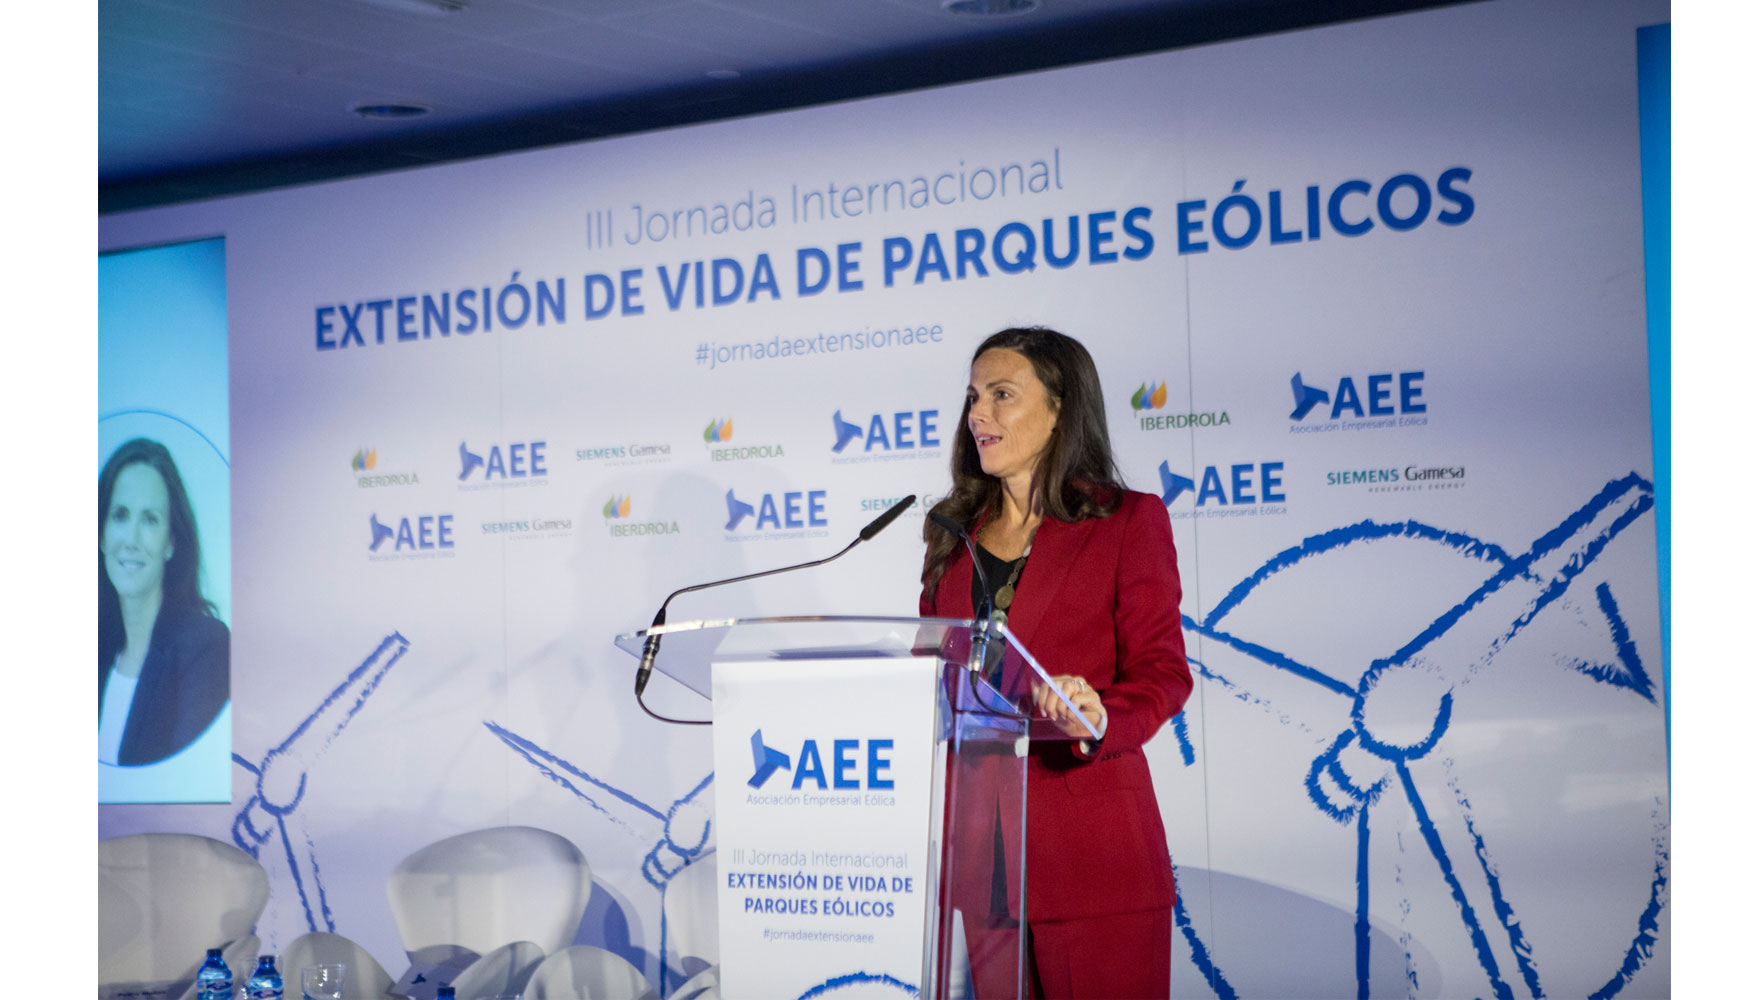 Roco Sicre, presidenta de la Asociacin Empresarial Elica (AEE)